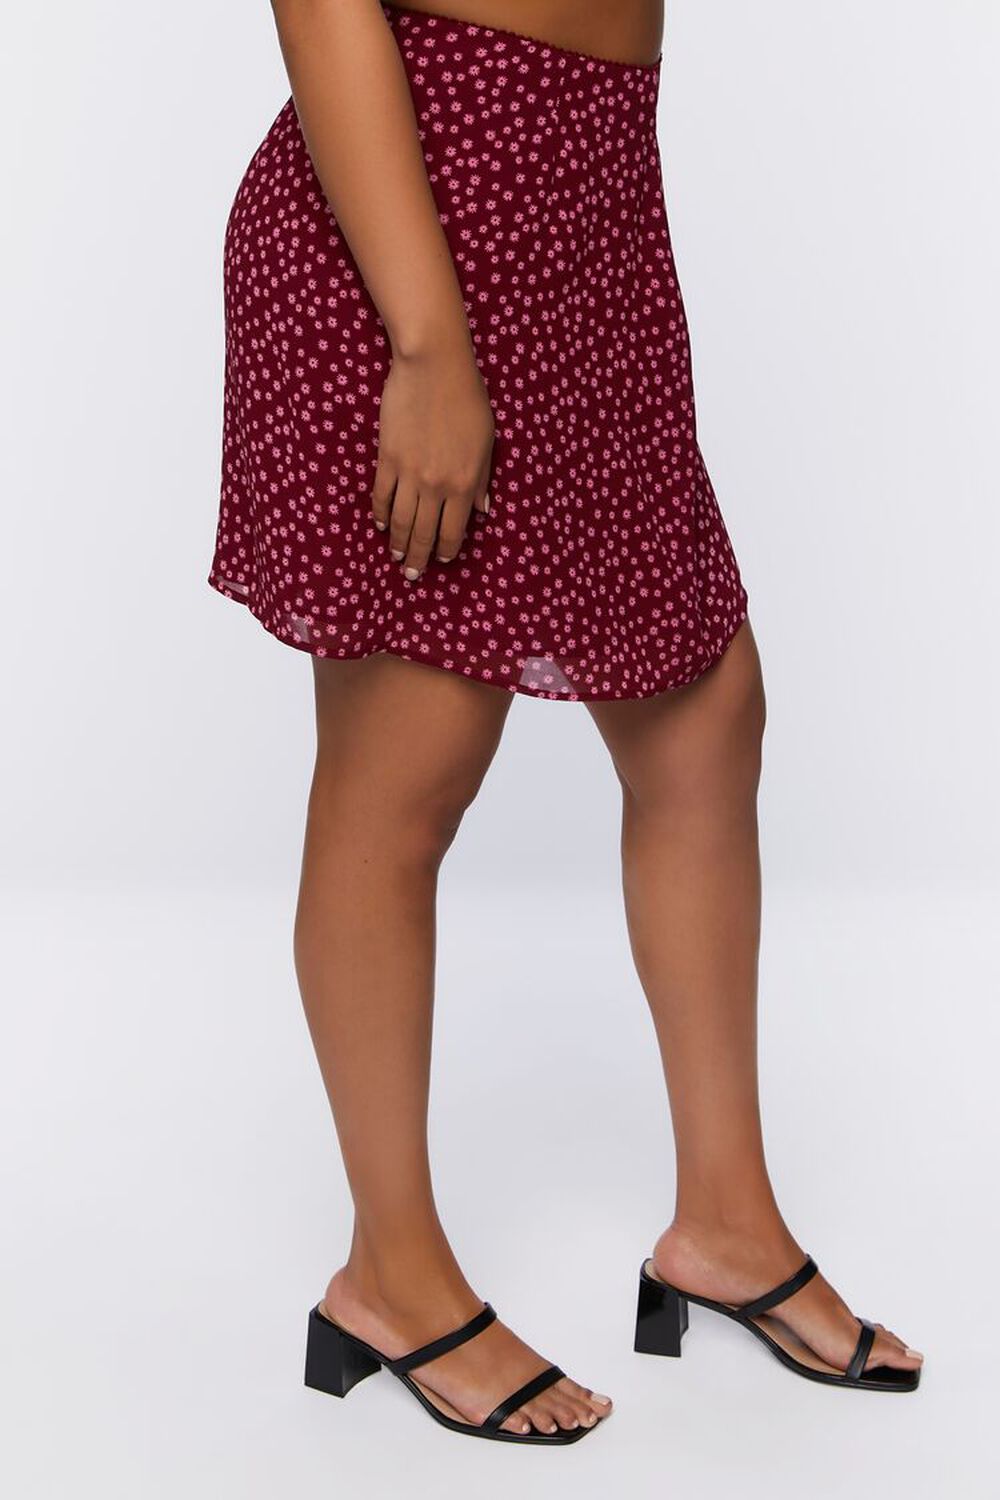 MAROON/MULTI Plus Size A-Line Mini Skirt, image 3